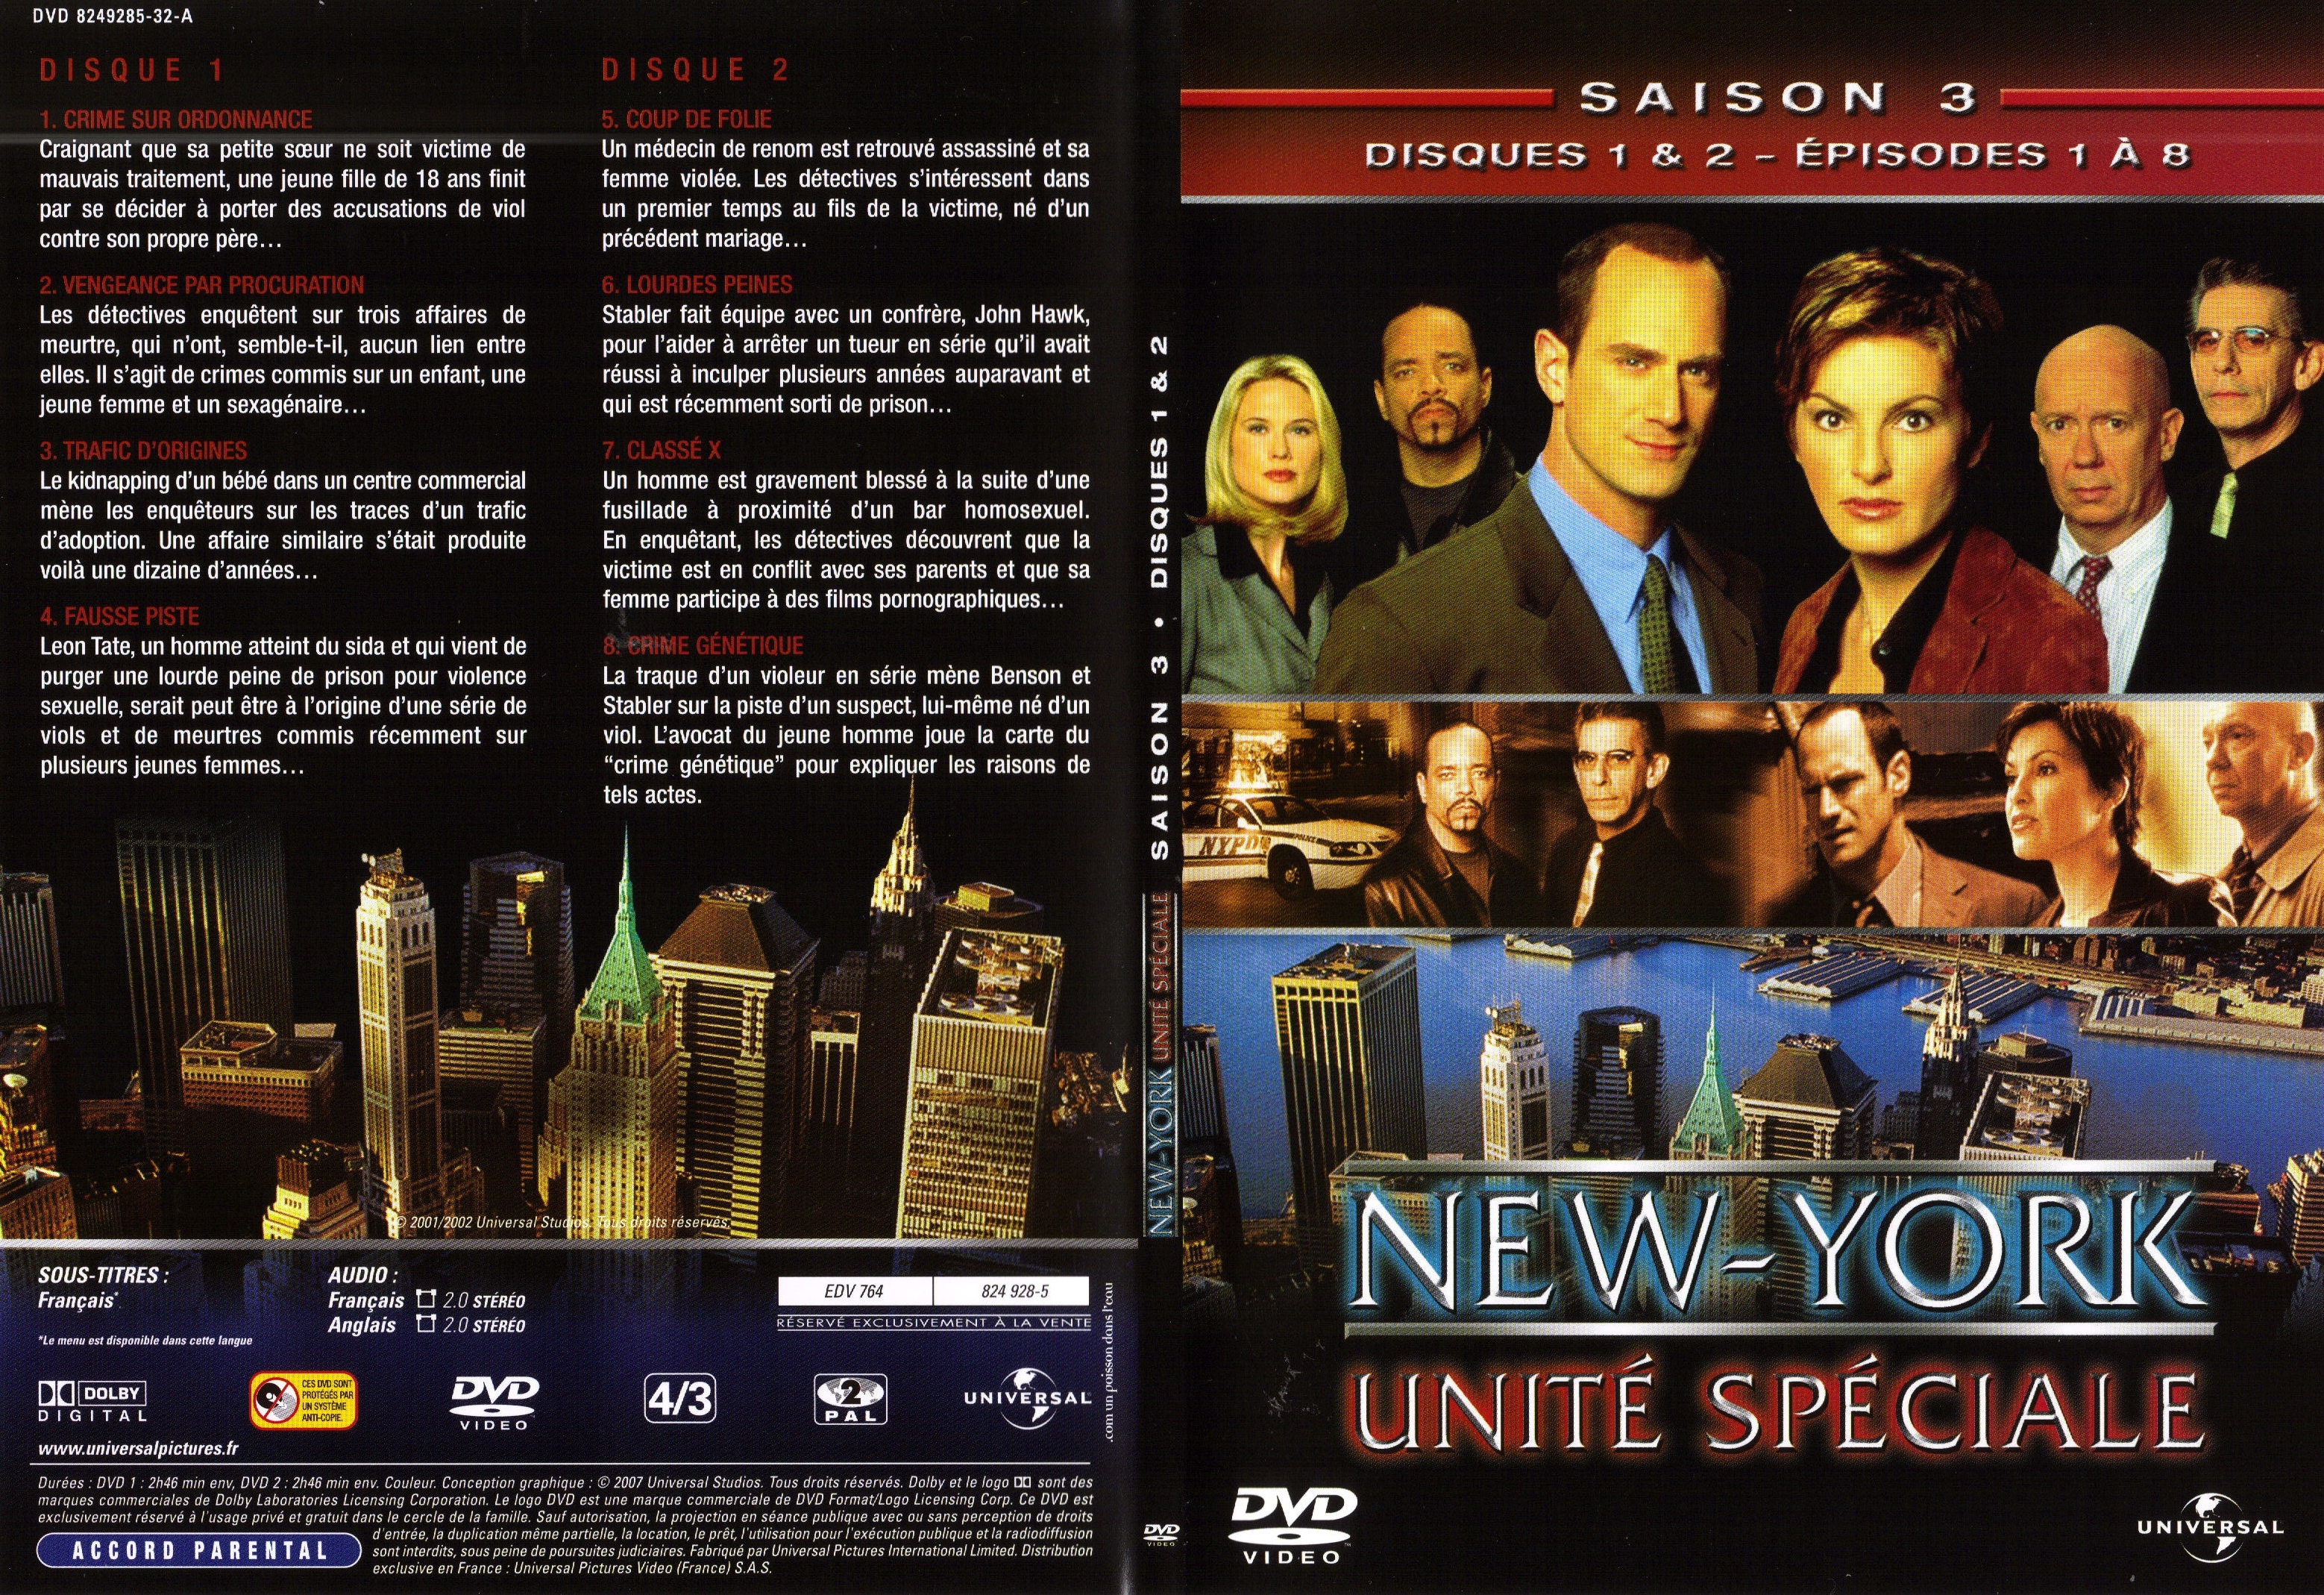 Jaquette DVD New York unit spciale saison 3 DVD 1